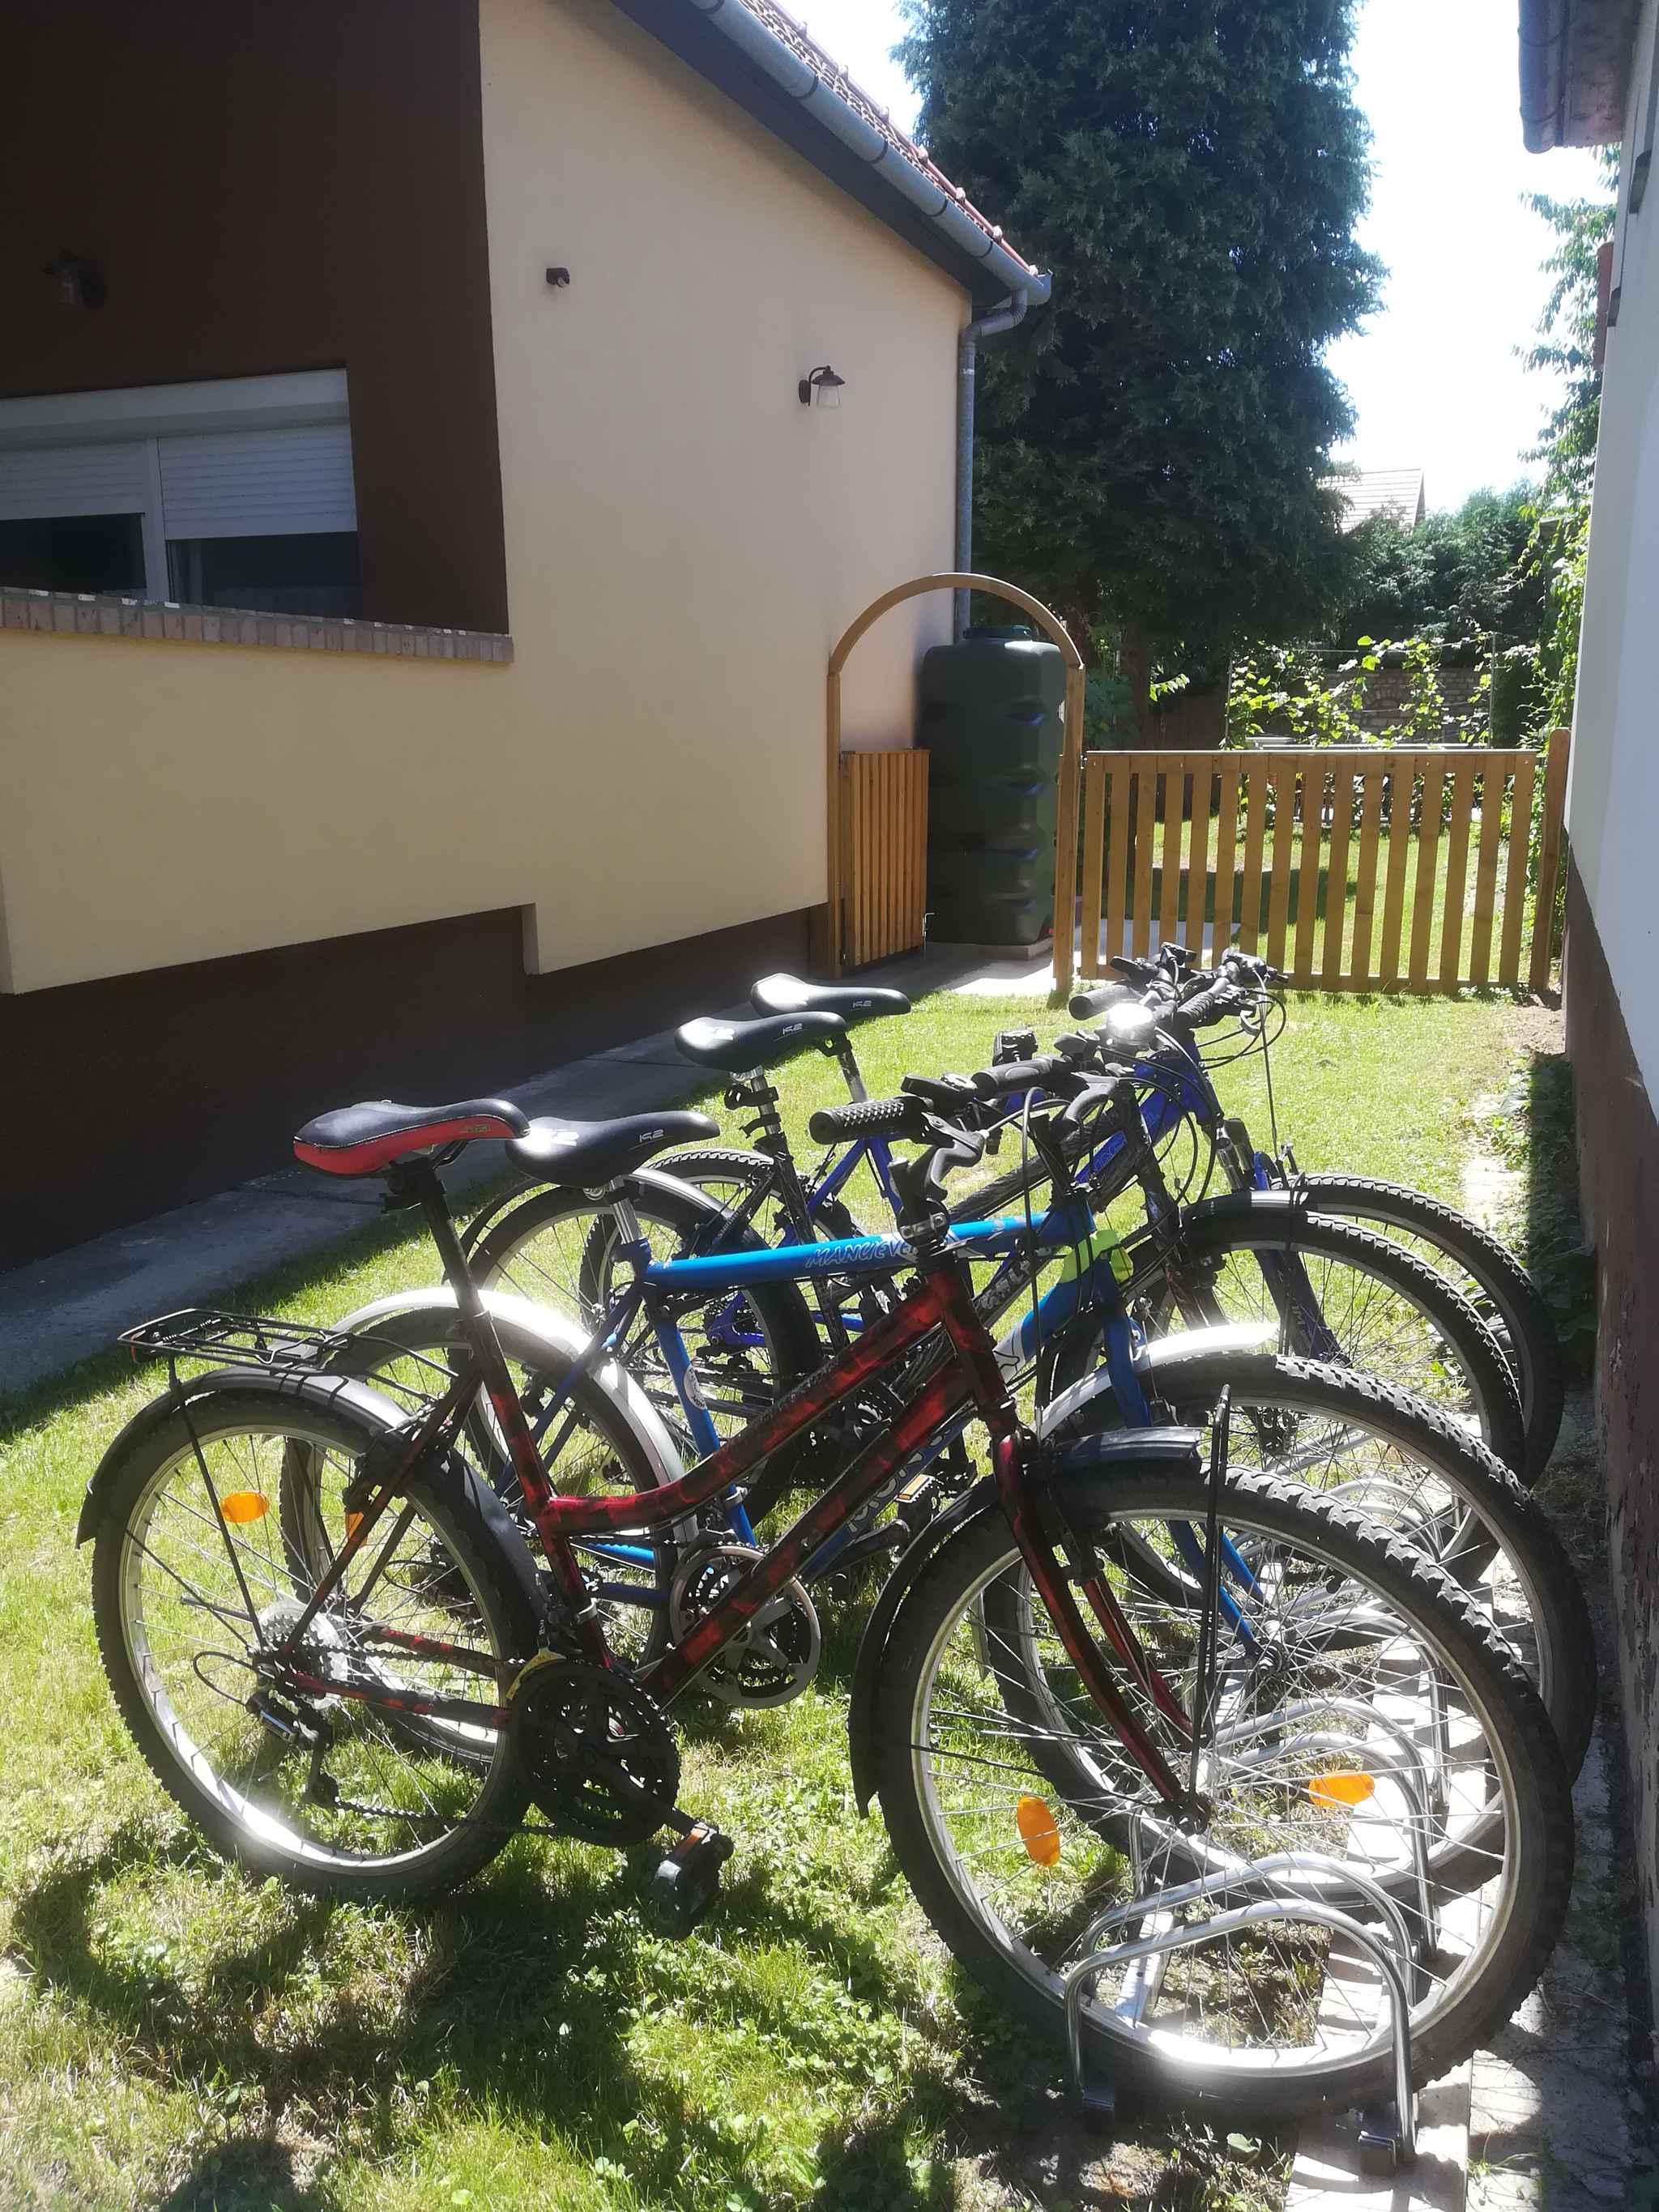 Ferienhaus mit Kajak, Fahrräder und Whirlpool  in Ungarn